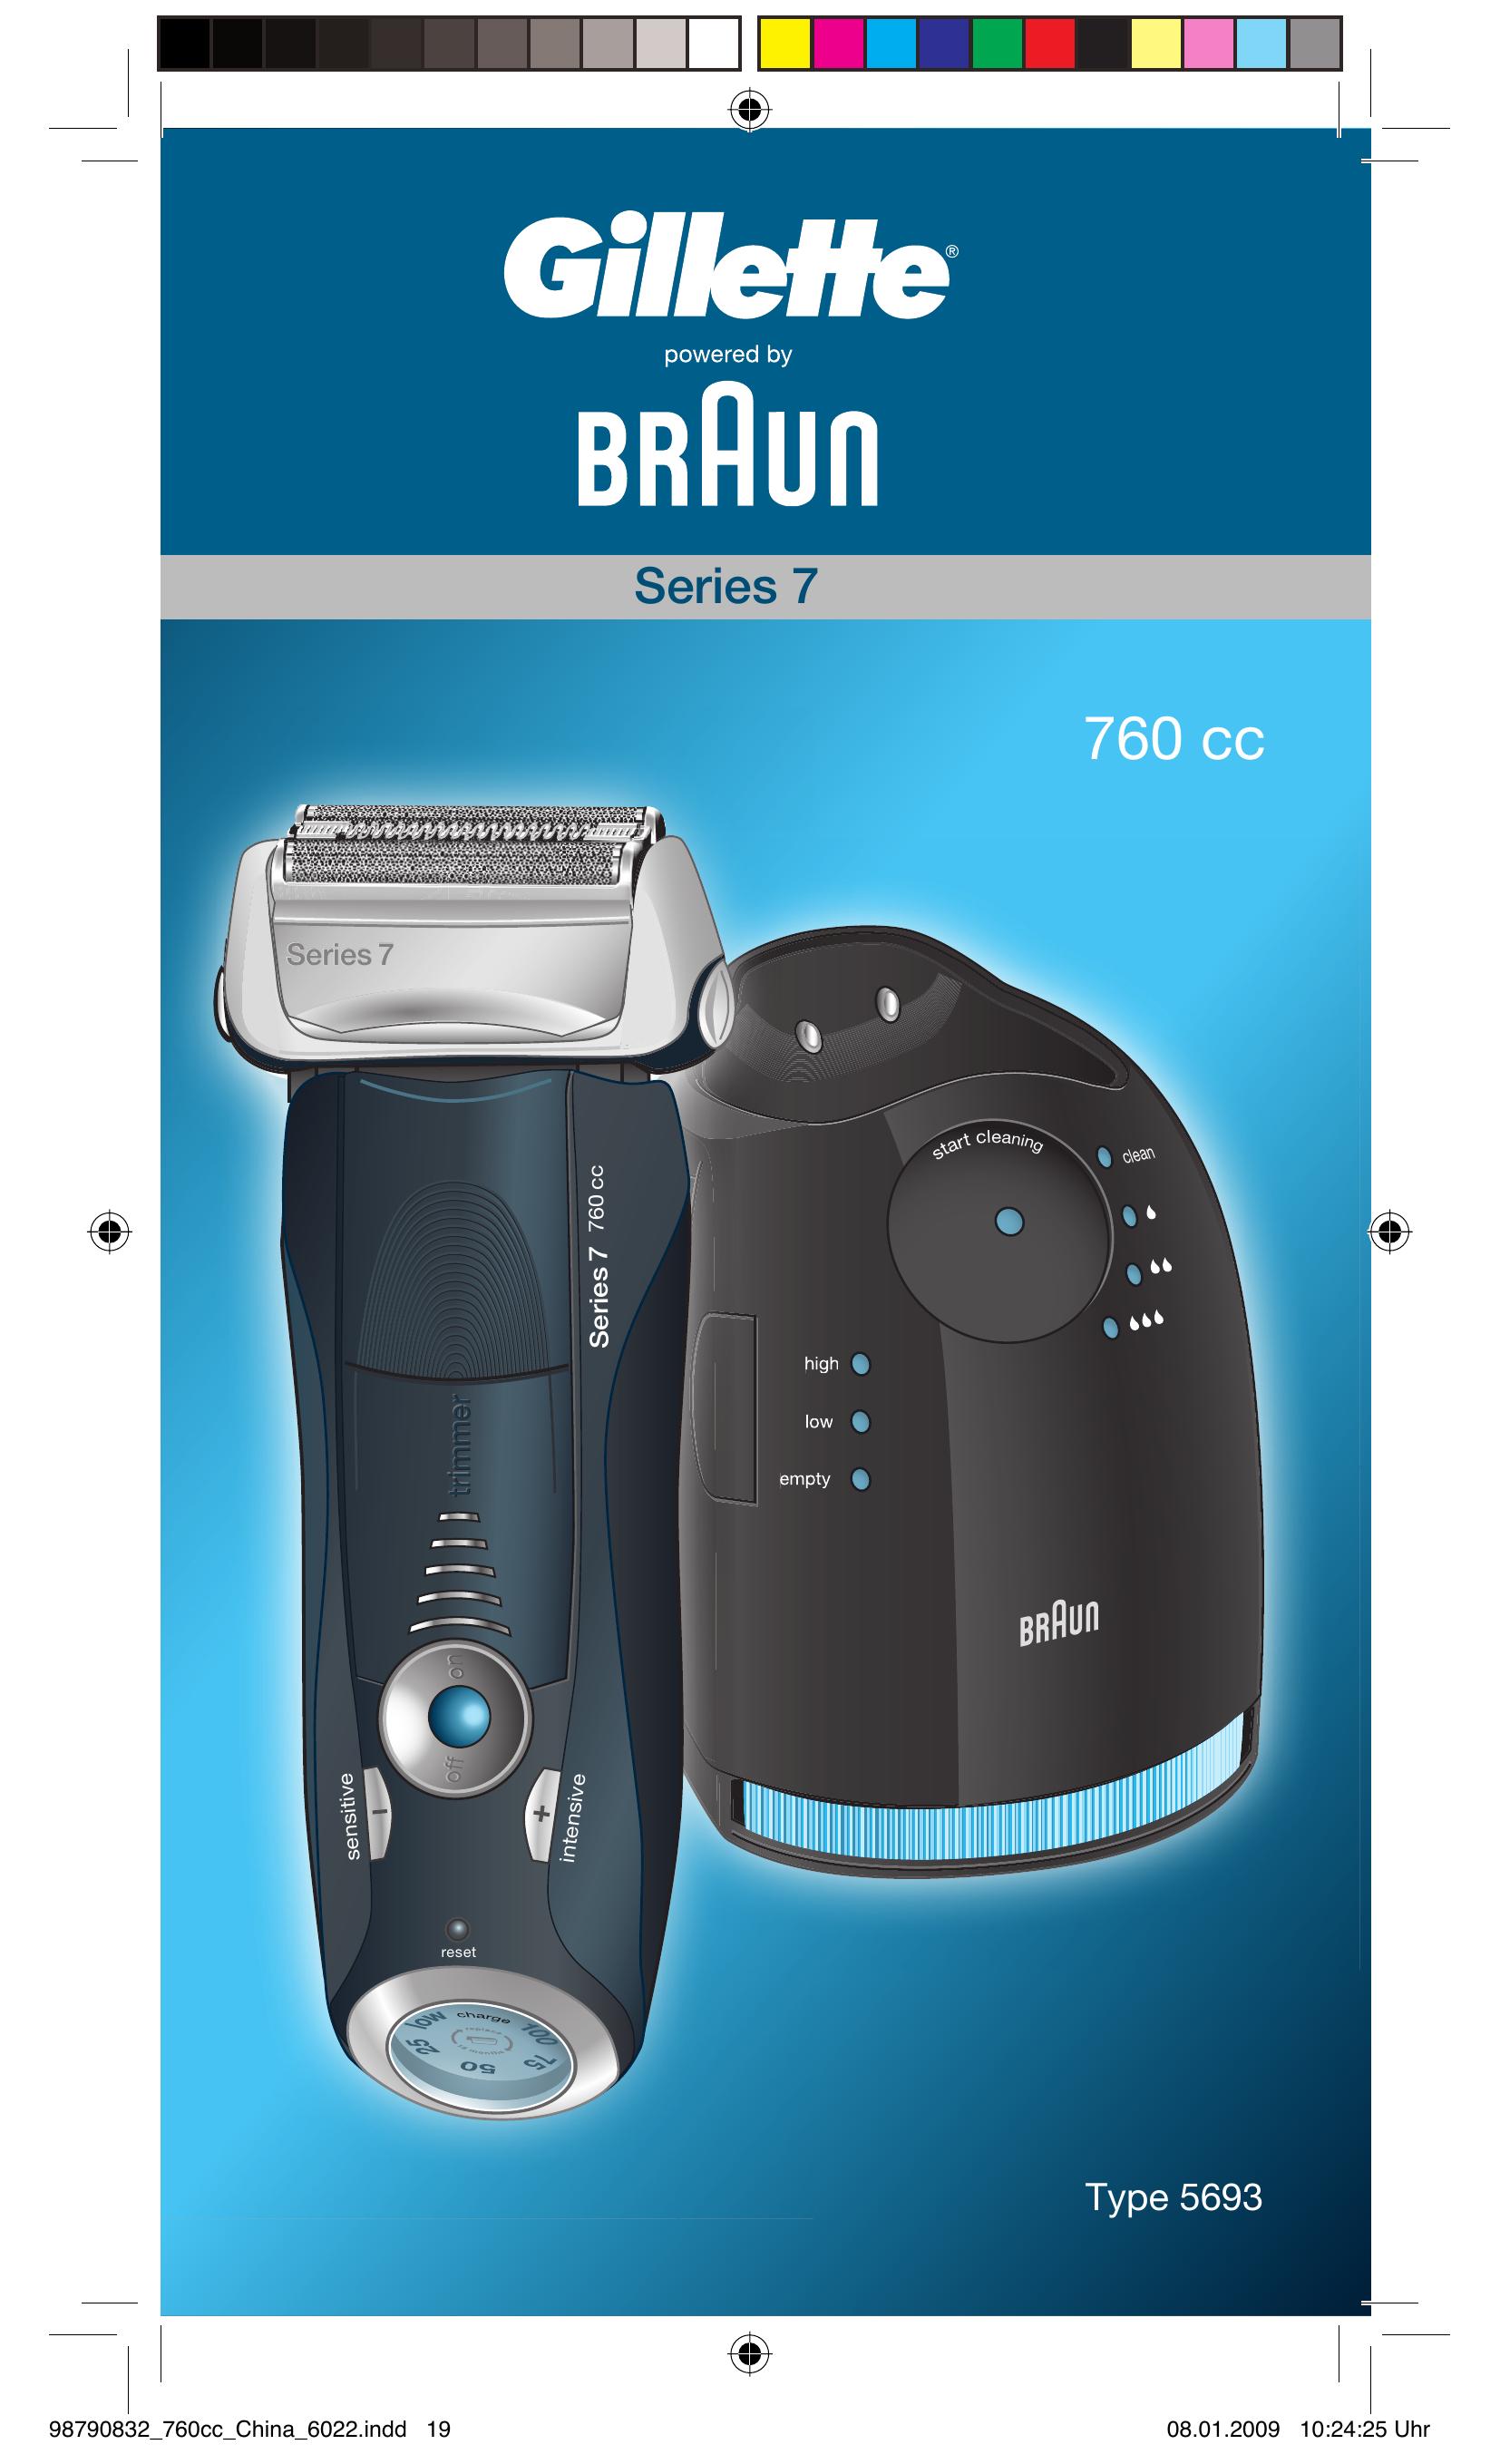 Gillette 5693 Electric Shaver User Manual